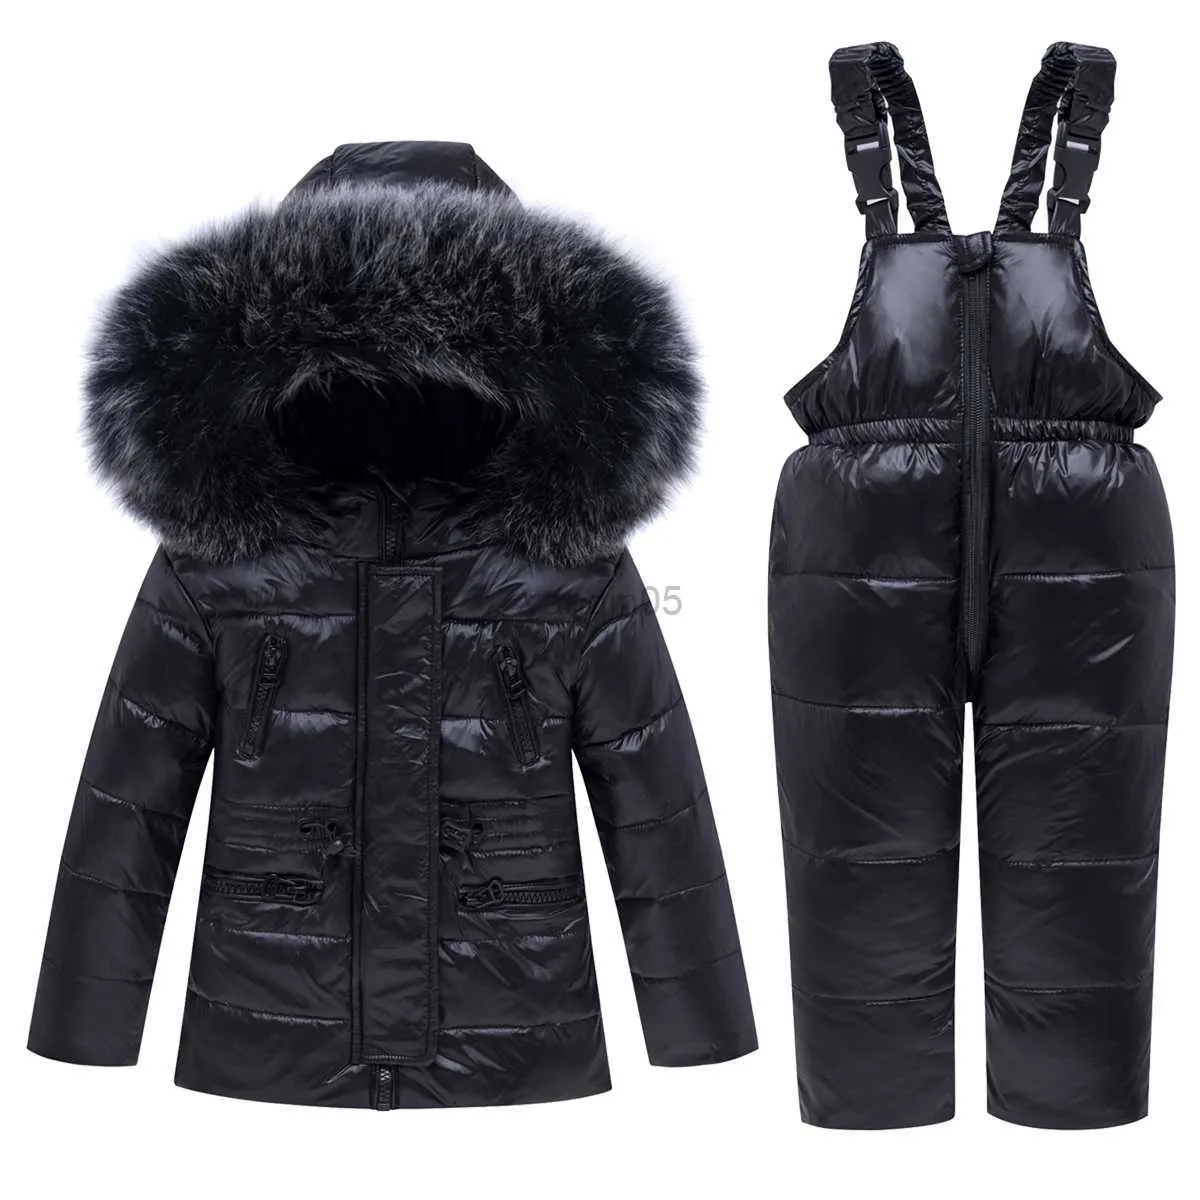 Вниз пальто олекид -30 градусов детская зимняя куртка мех воротник вниз для девочки 1-5 лет.